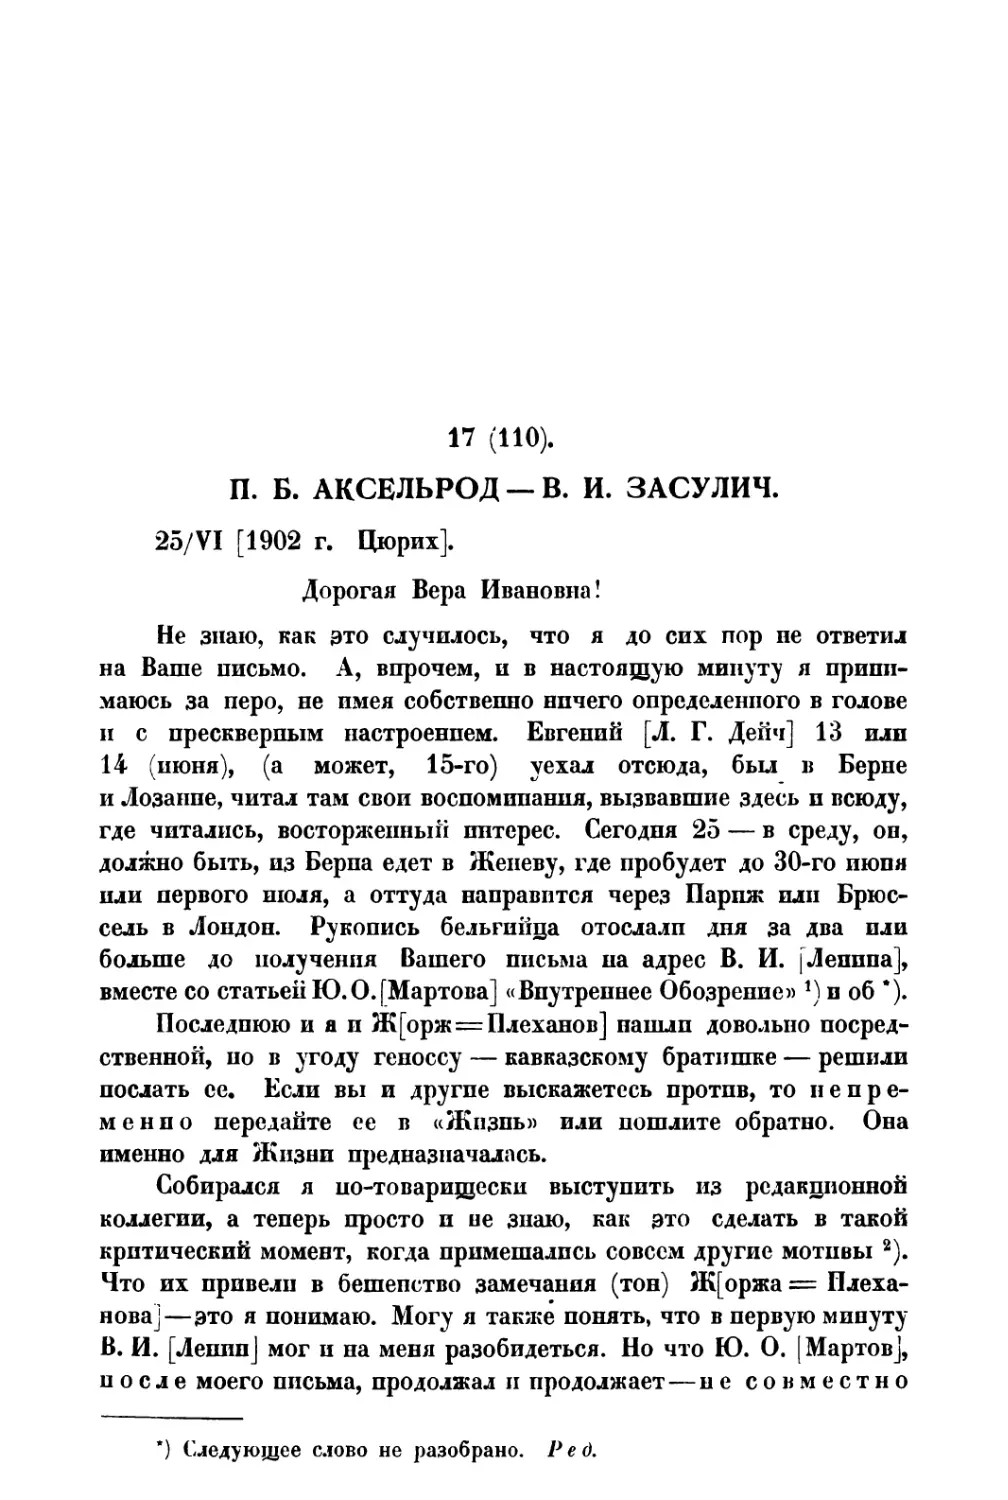 17. П. Б. Аксельрод — В. И. Засулич от 25 VI 1902 г